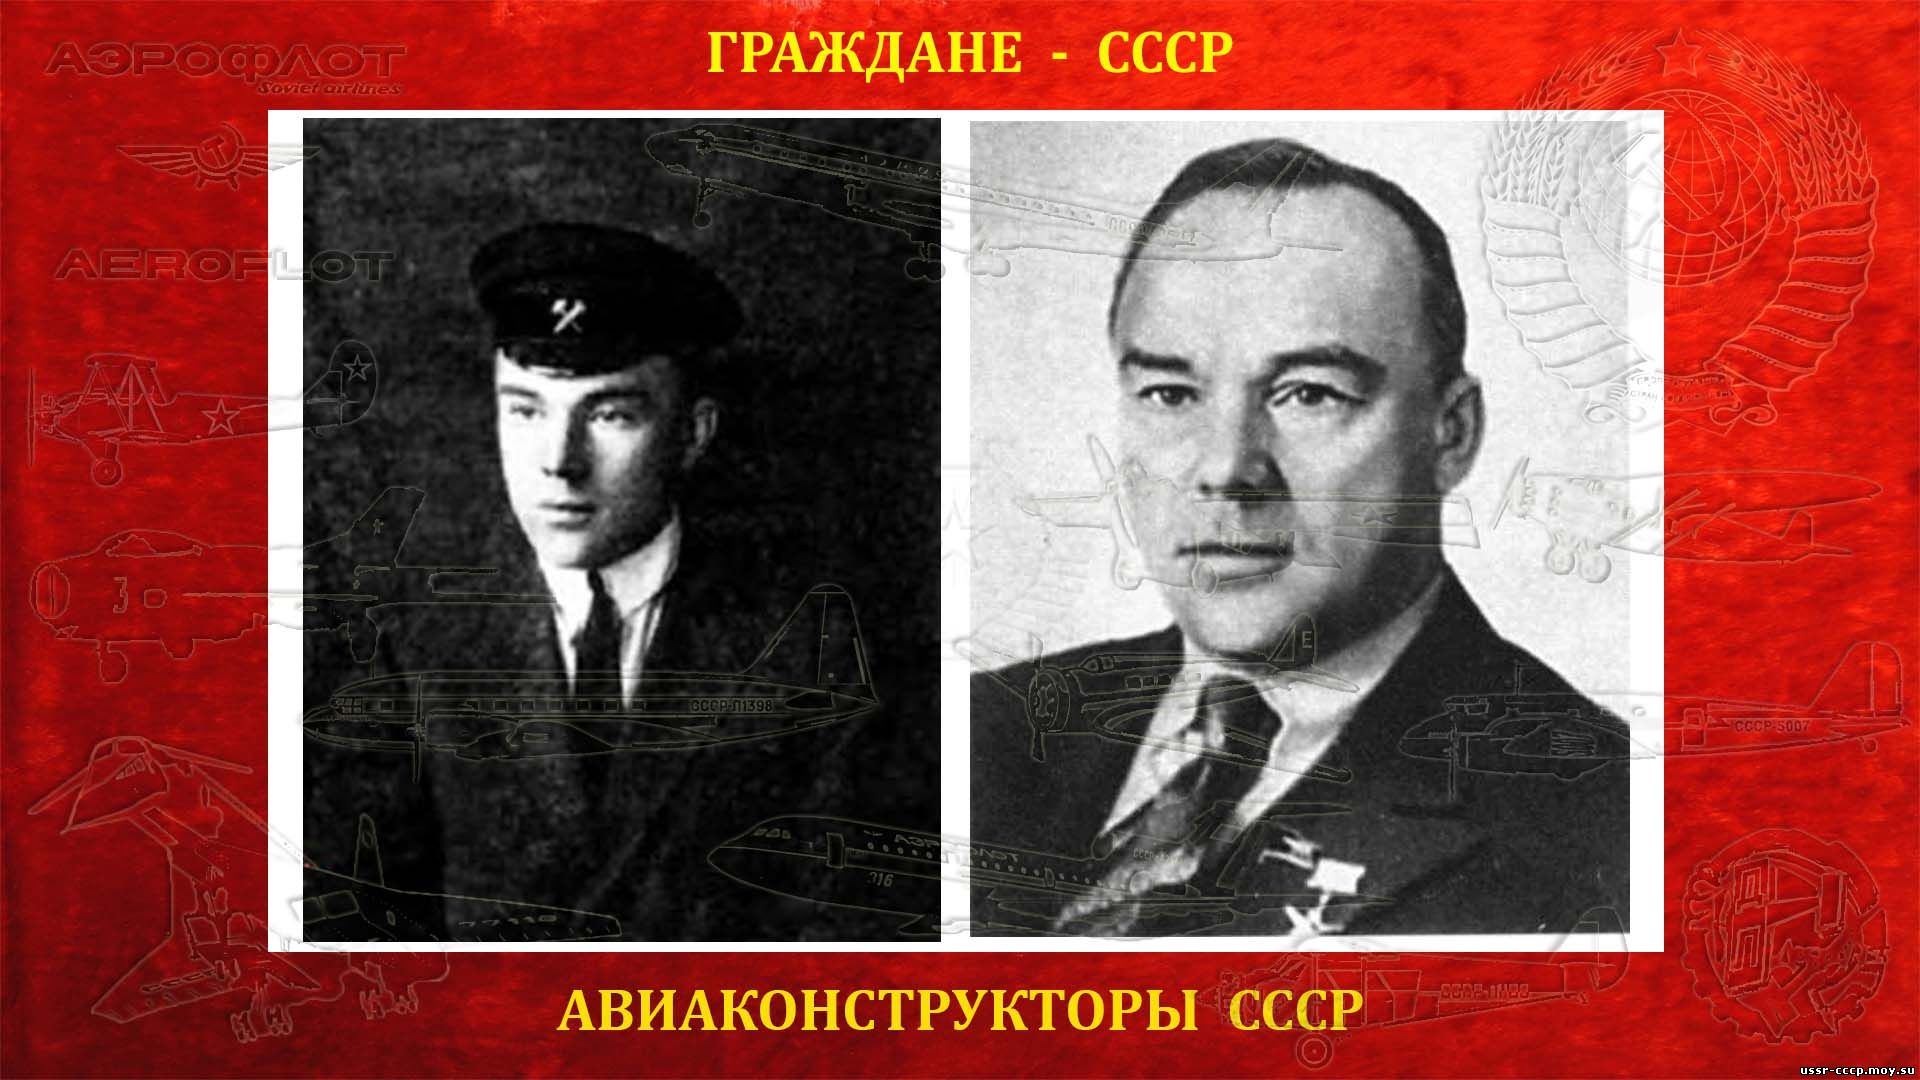 Поликарпов Николай Николаевич — Авиаконструктор (10.06.1892 — 30.07.1944) биография))